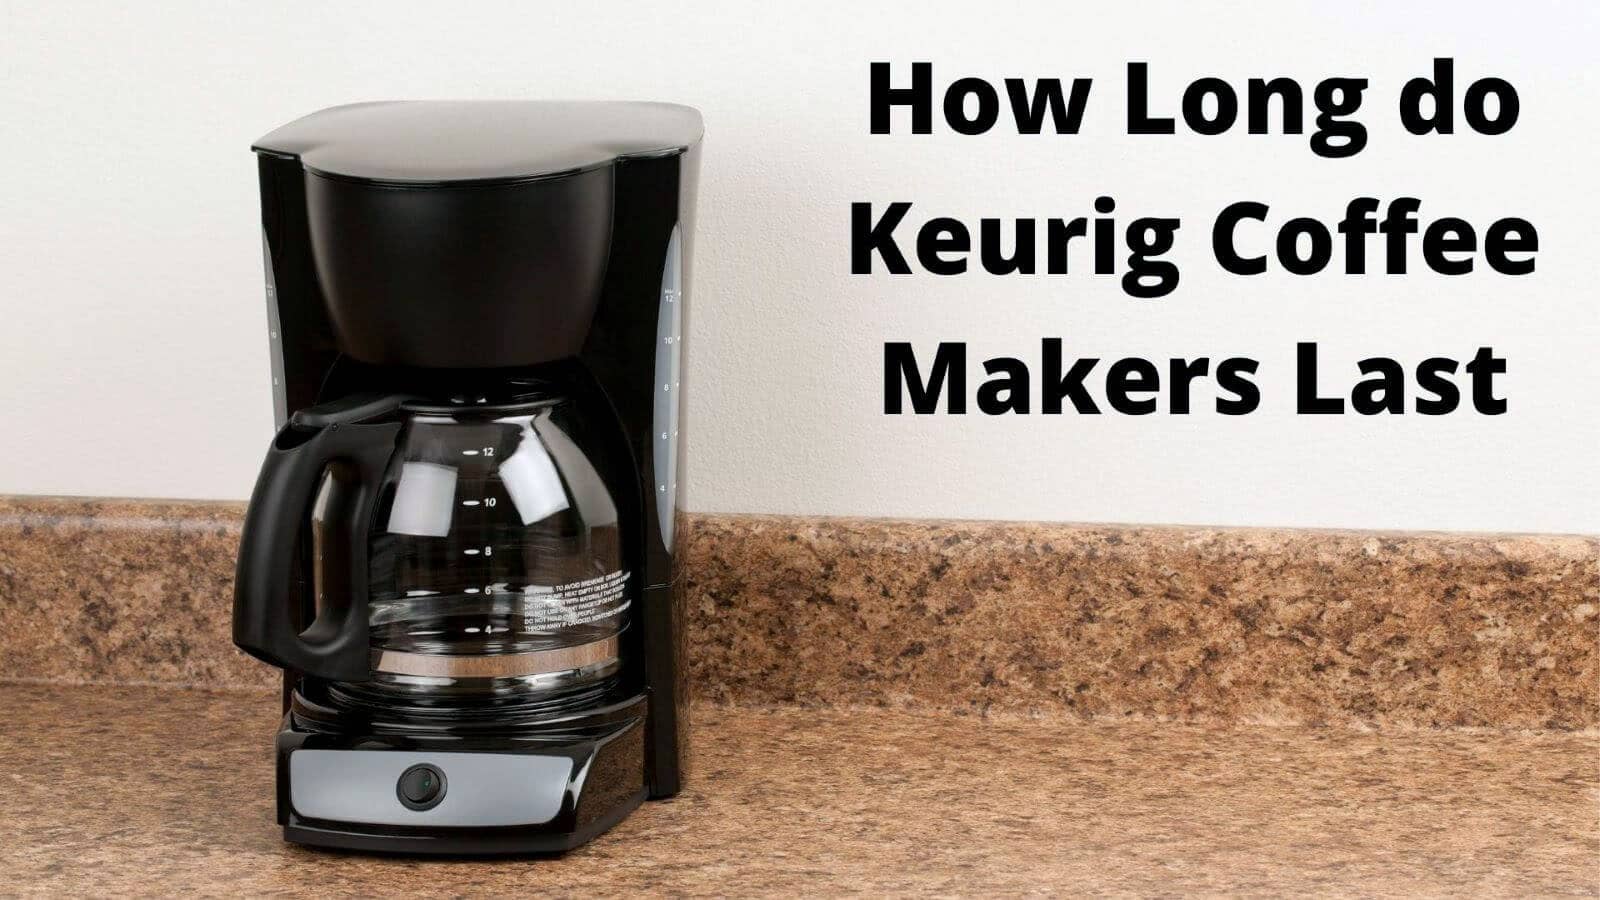 how long do Keurig coffee makers last